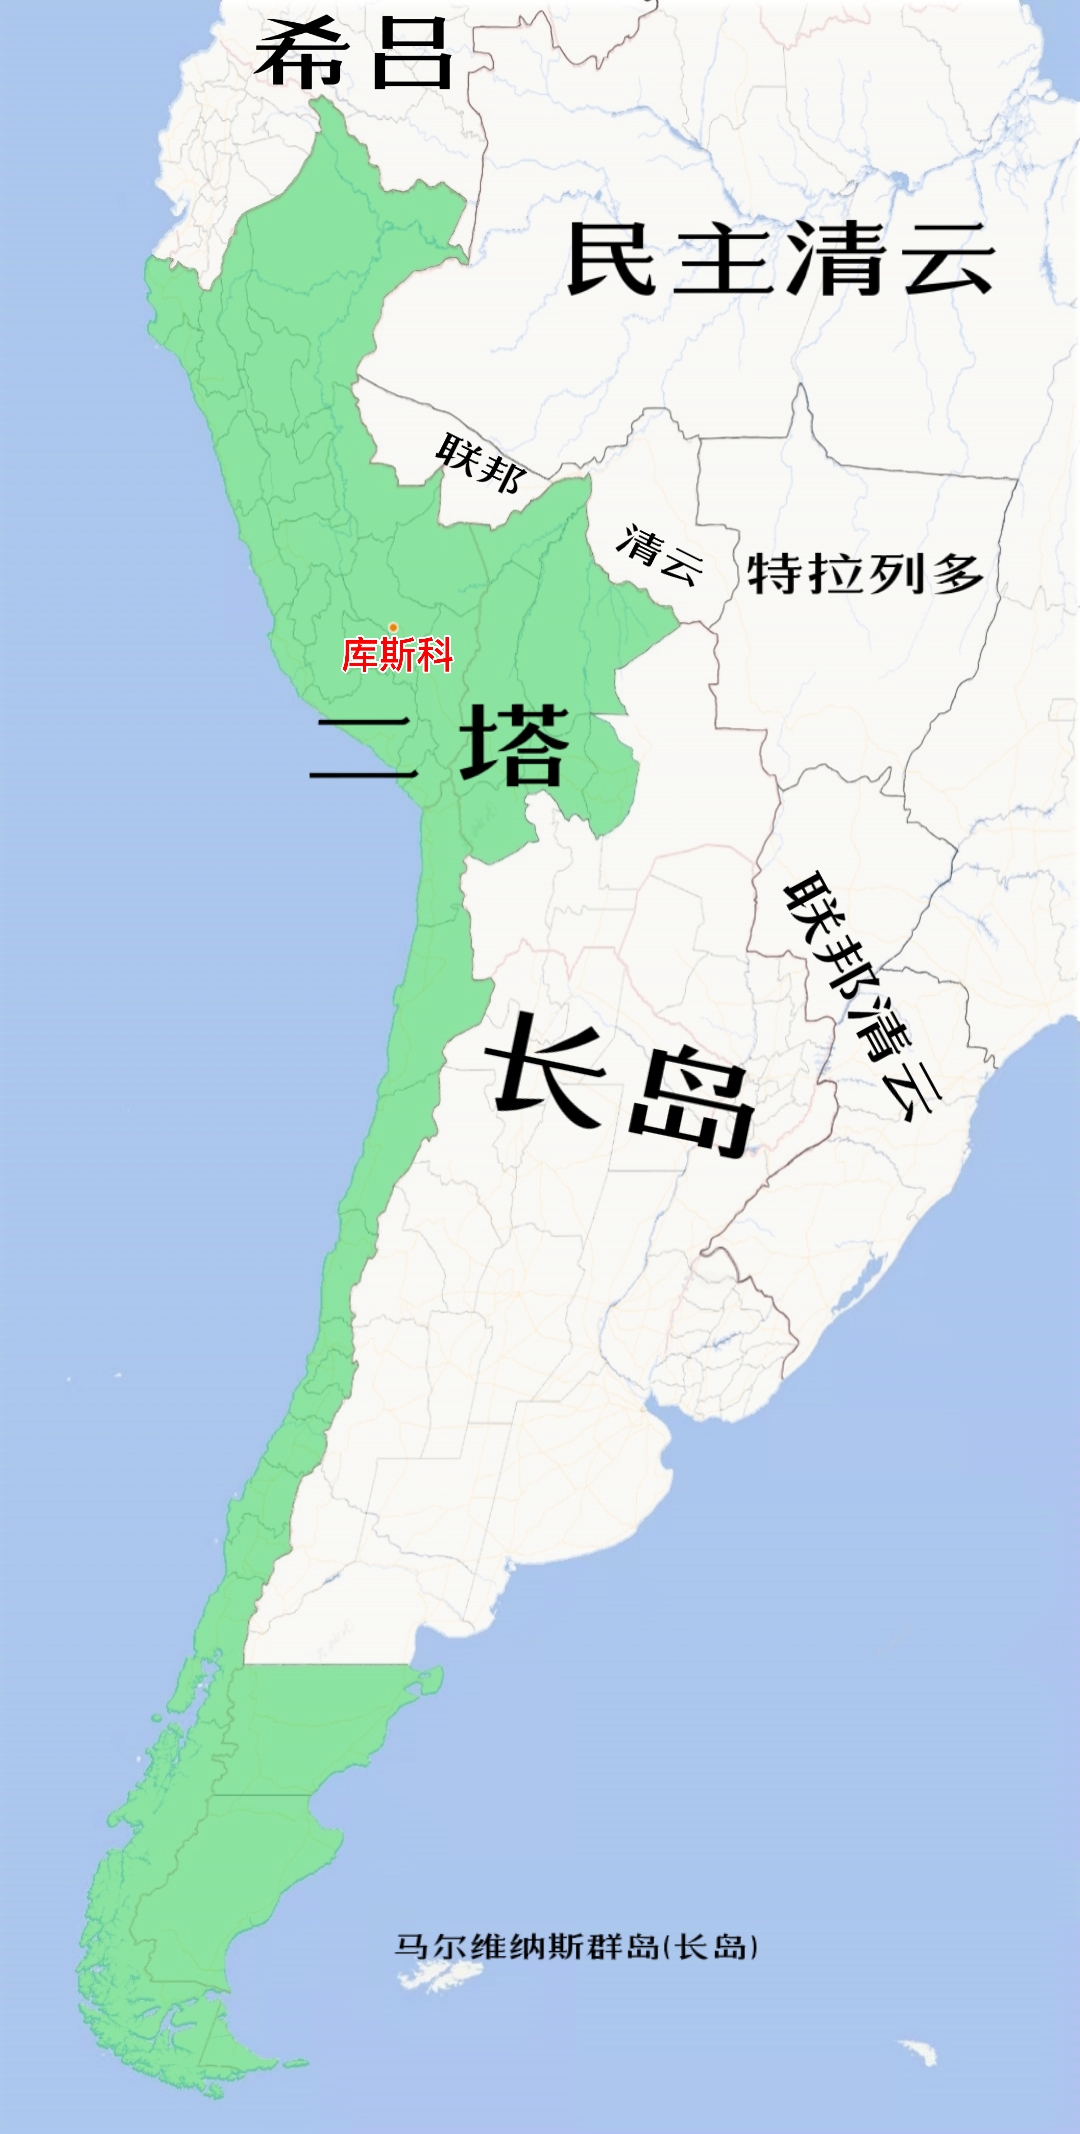 第二塔萬汀蘇尤聯邦共和國在南美洲的位置(綠色部分)